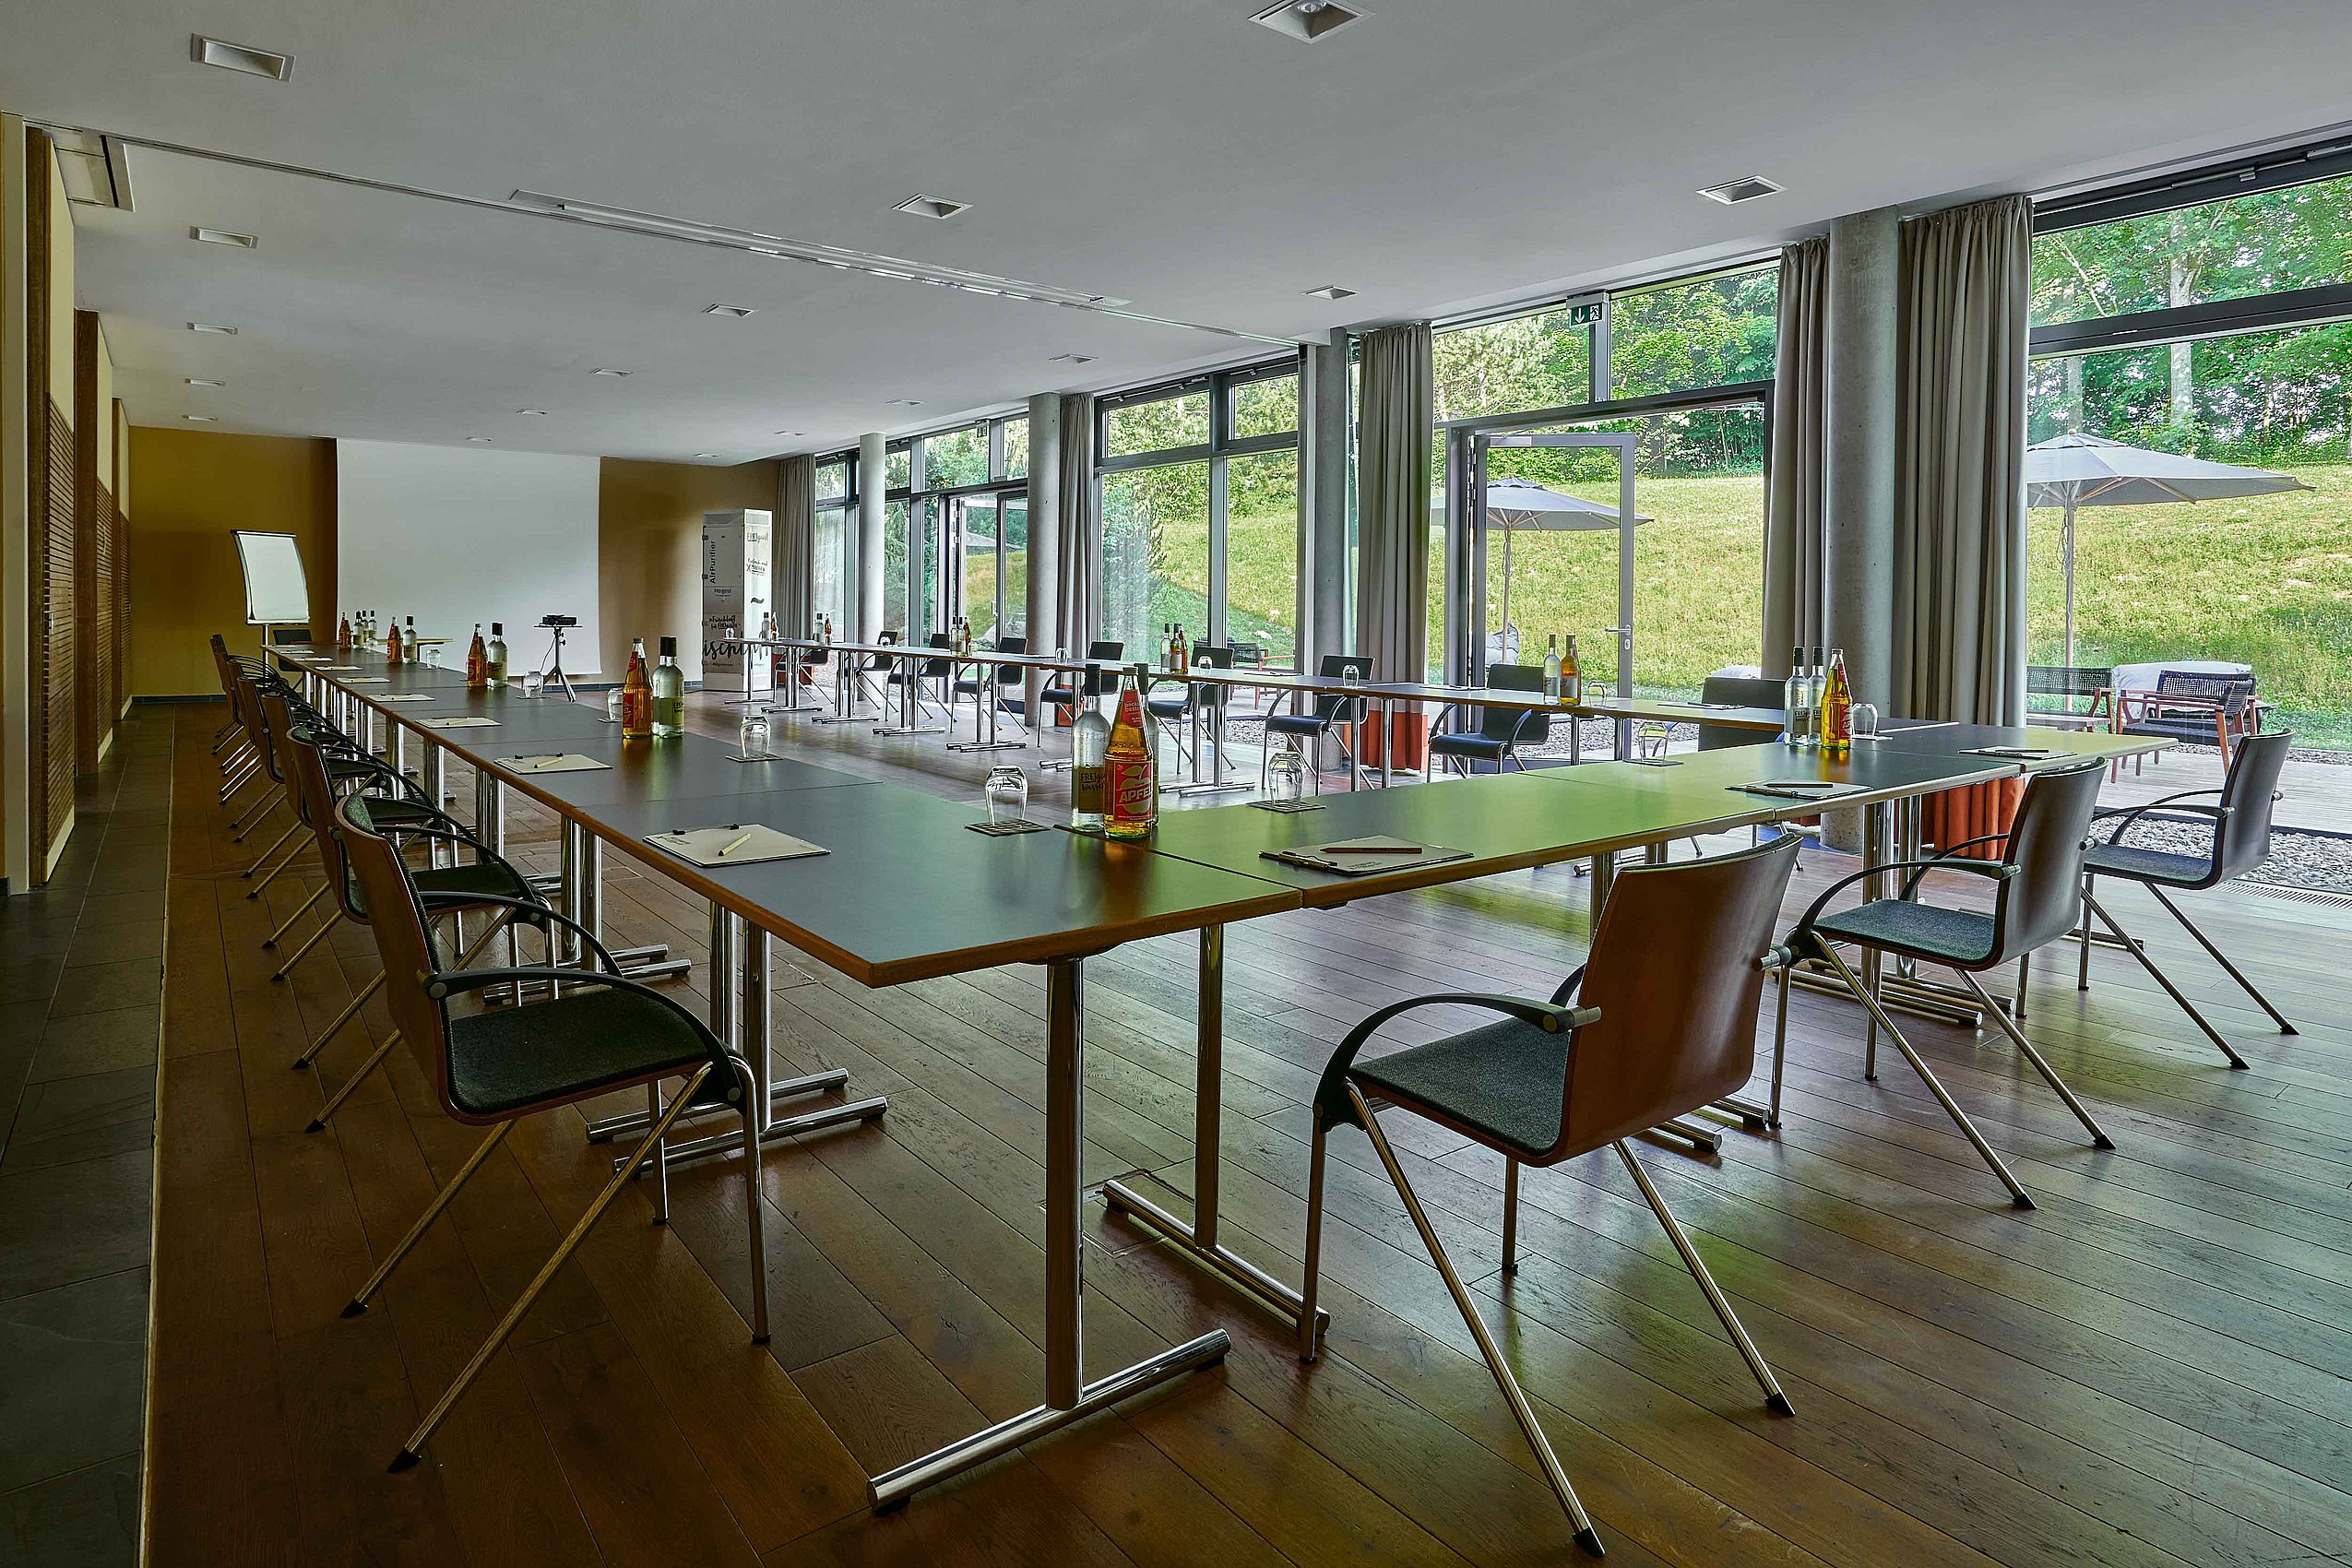 Übersicht über der Tagungsräume "FREIraum I, II & III" im Hotel FREIgeist Northeim mit u-förmigen Tischen in der Mitte